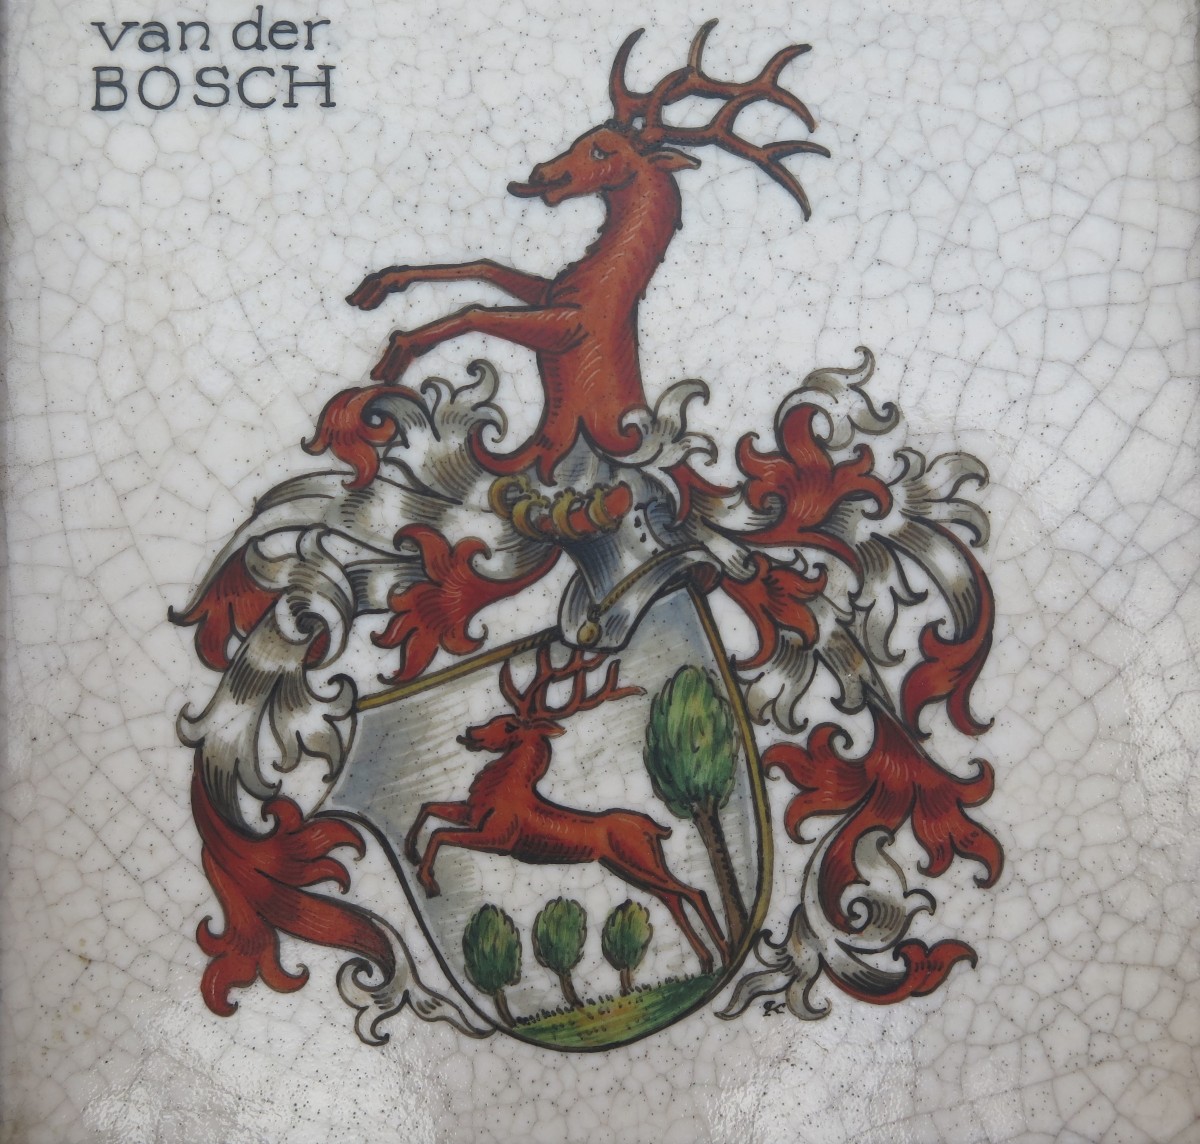 Wappen van der Bosch